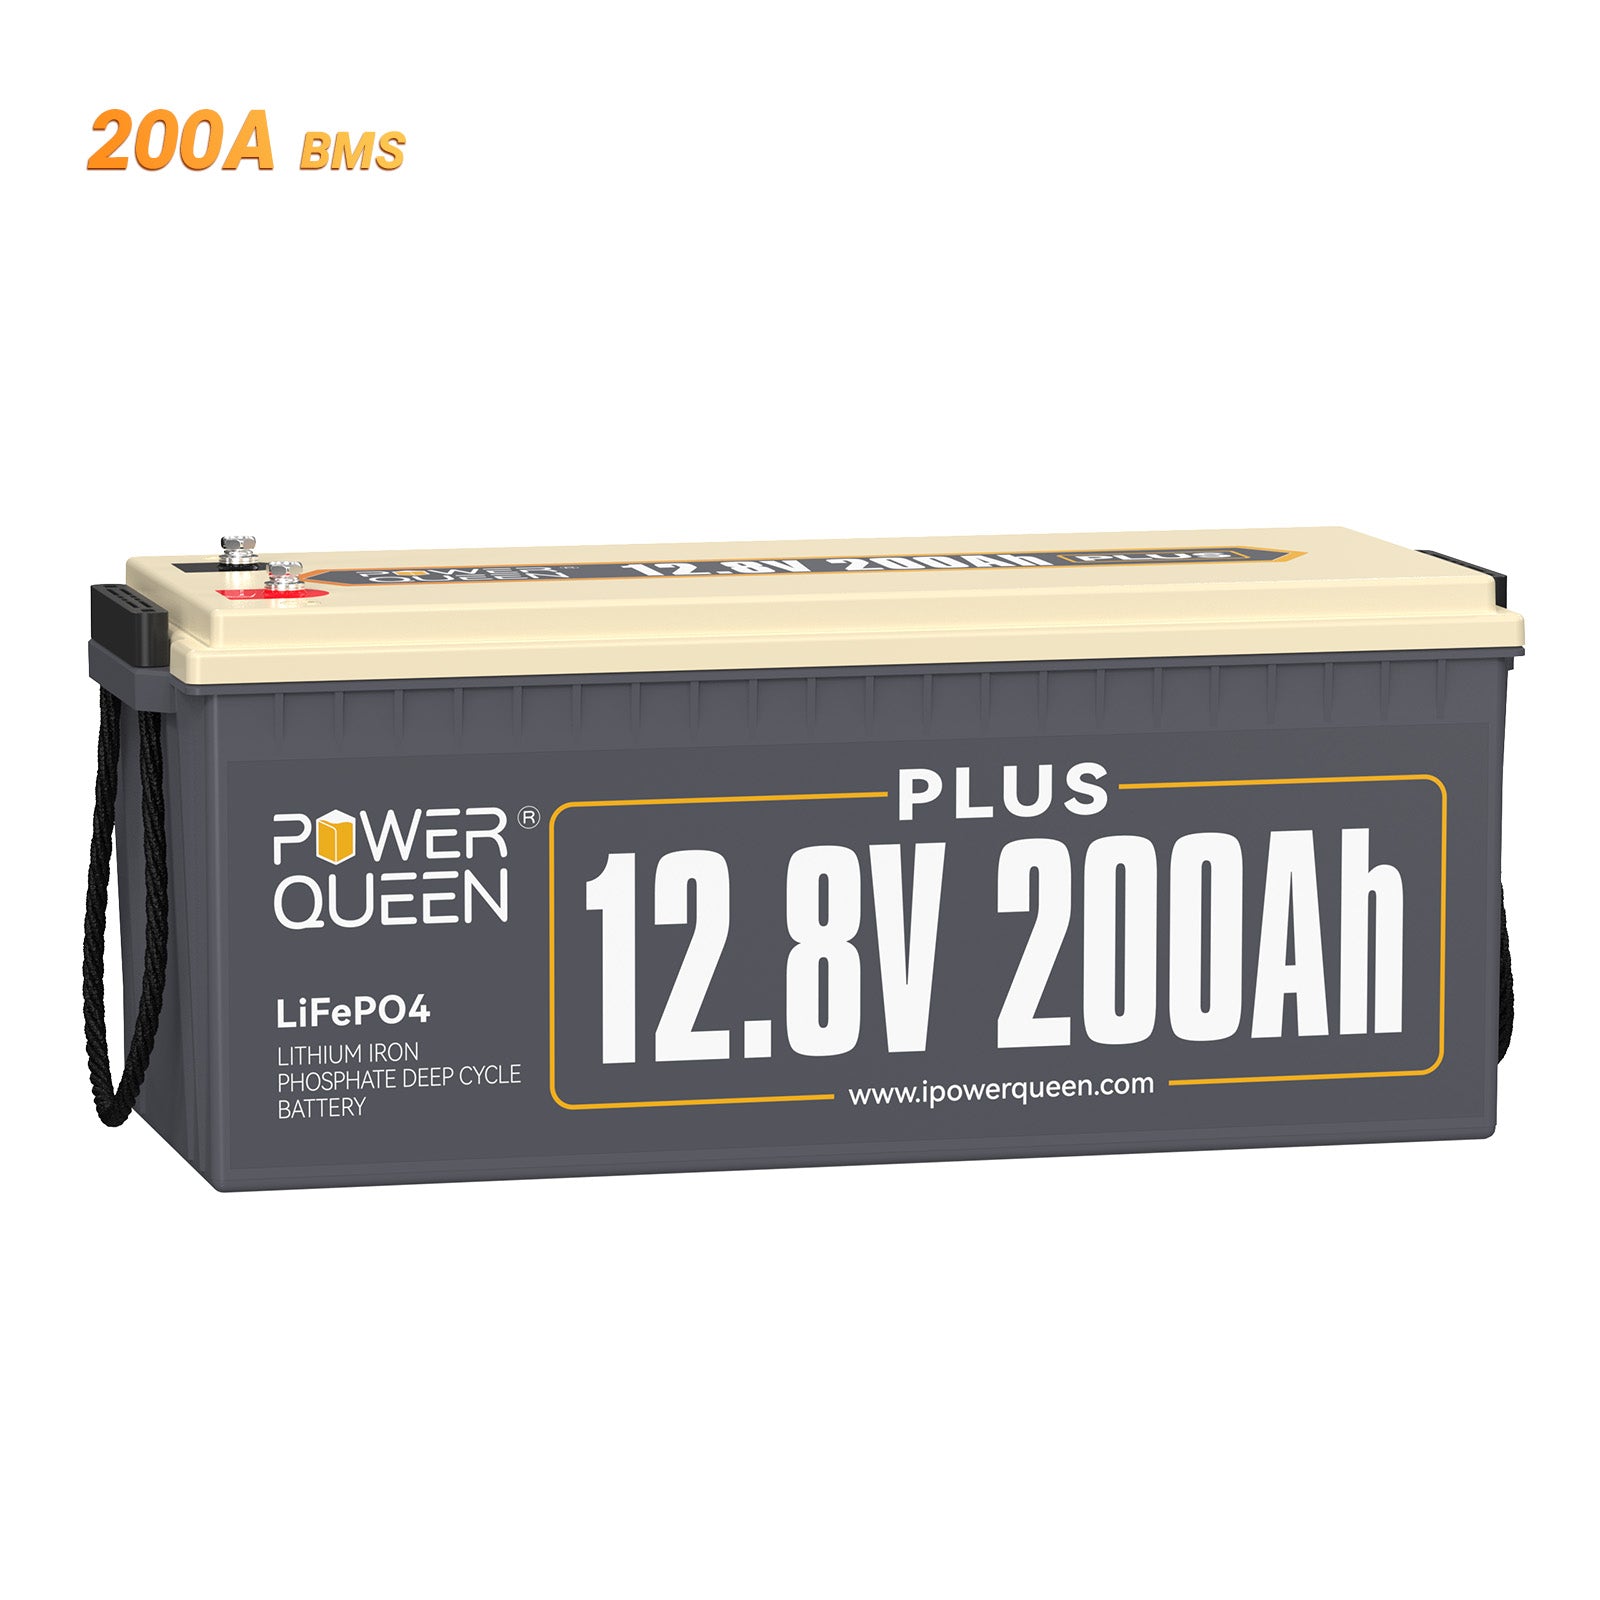 Power Queen 12,8V 200Ah Plus LiFePO4-batterij, ingebouwd 200A BMS